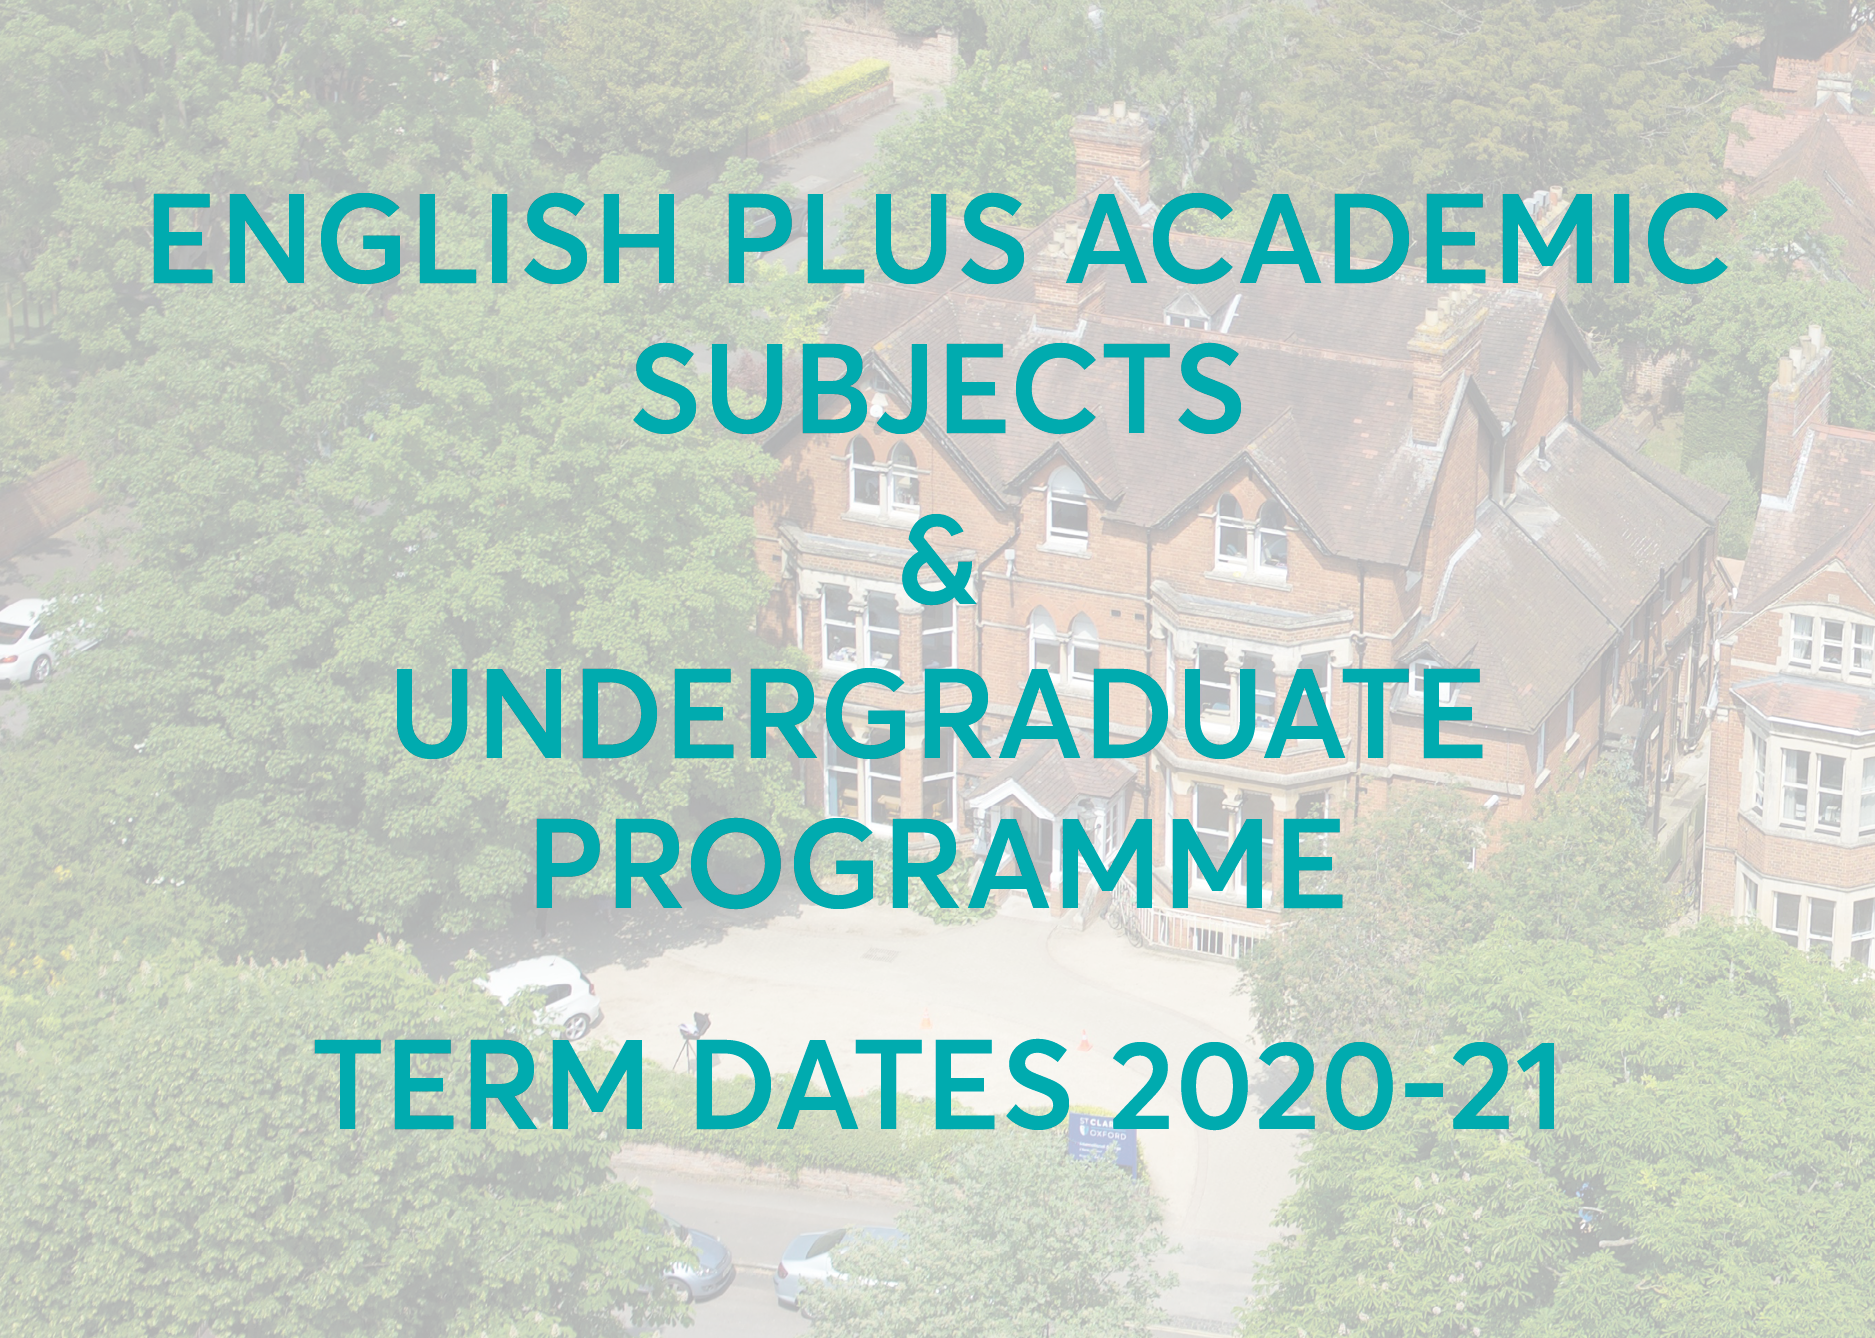 Undergraduate Programme Term Dates